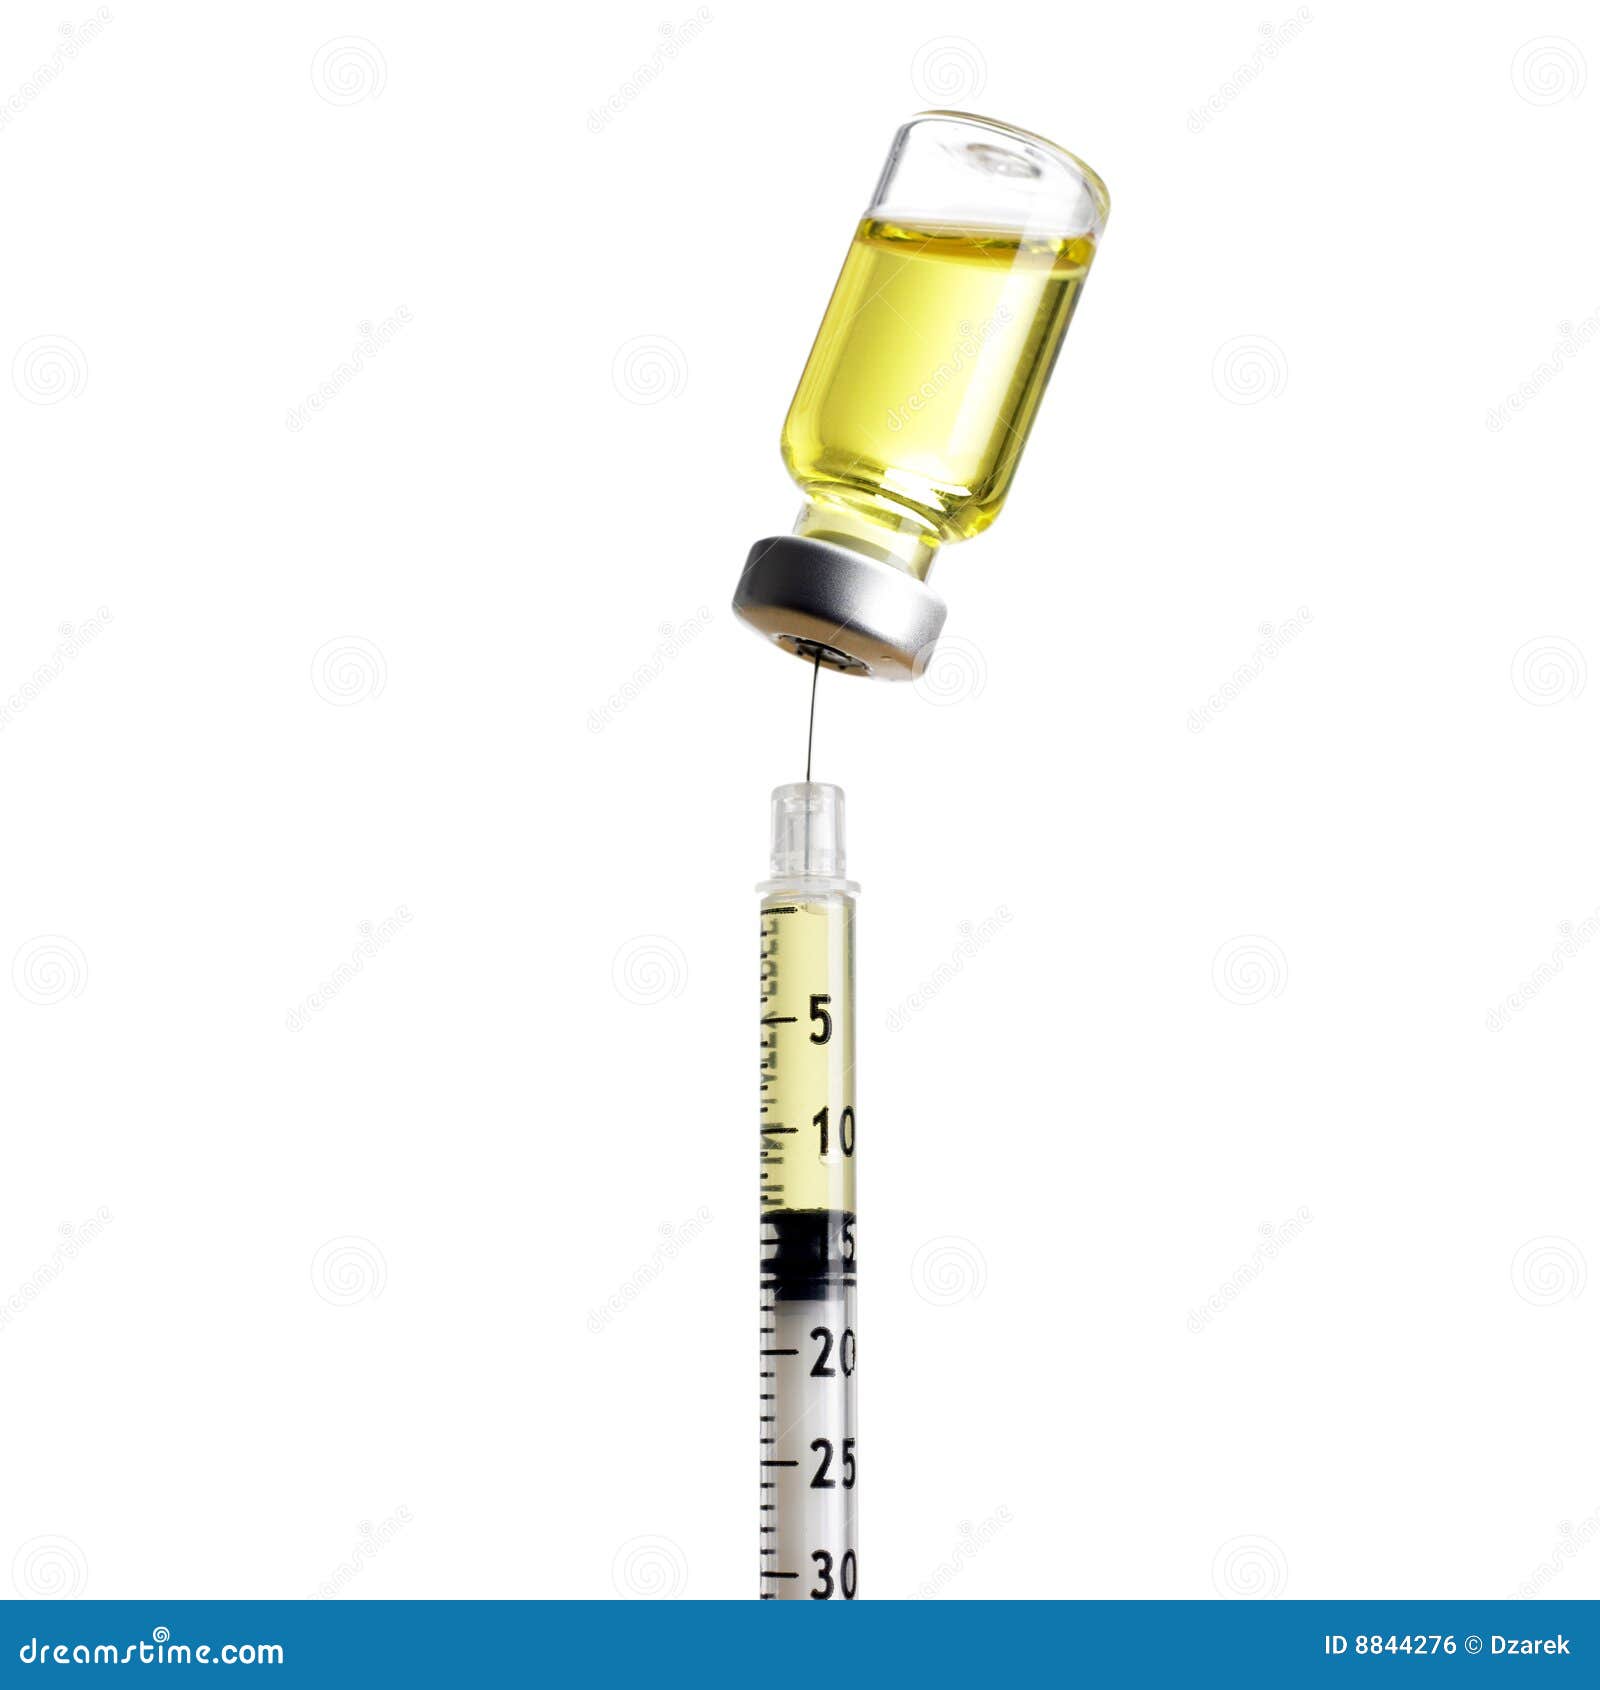 syringe and vial  on white